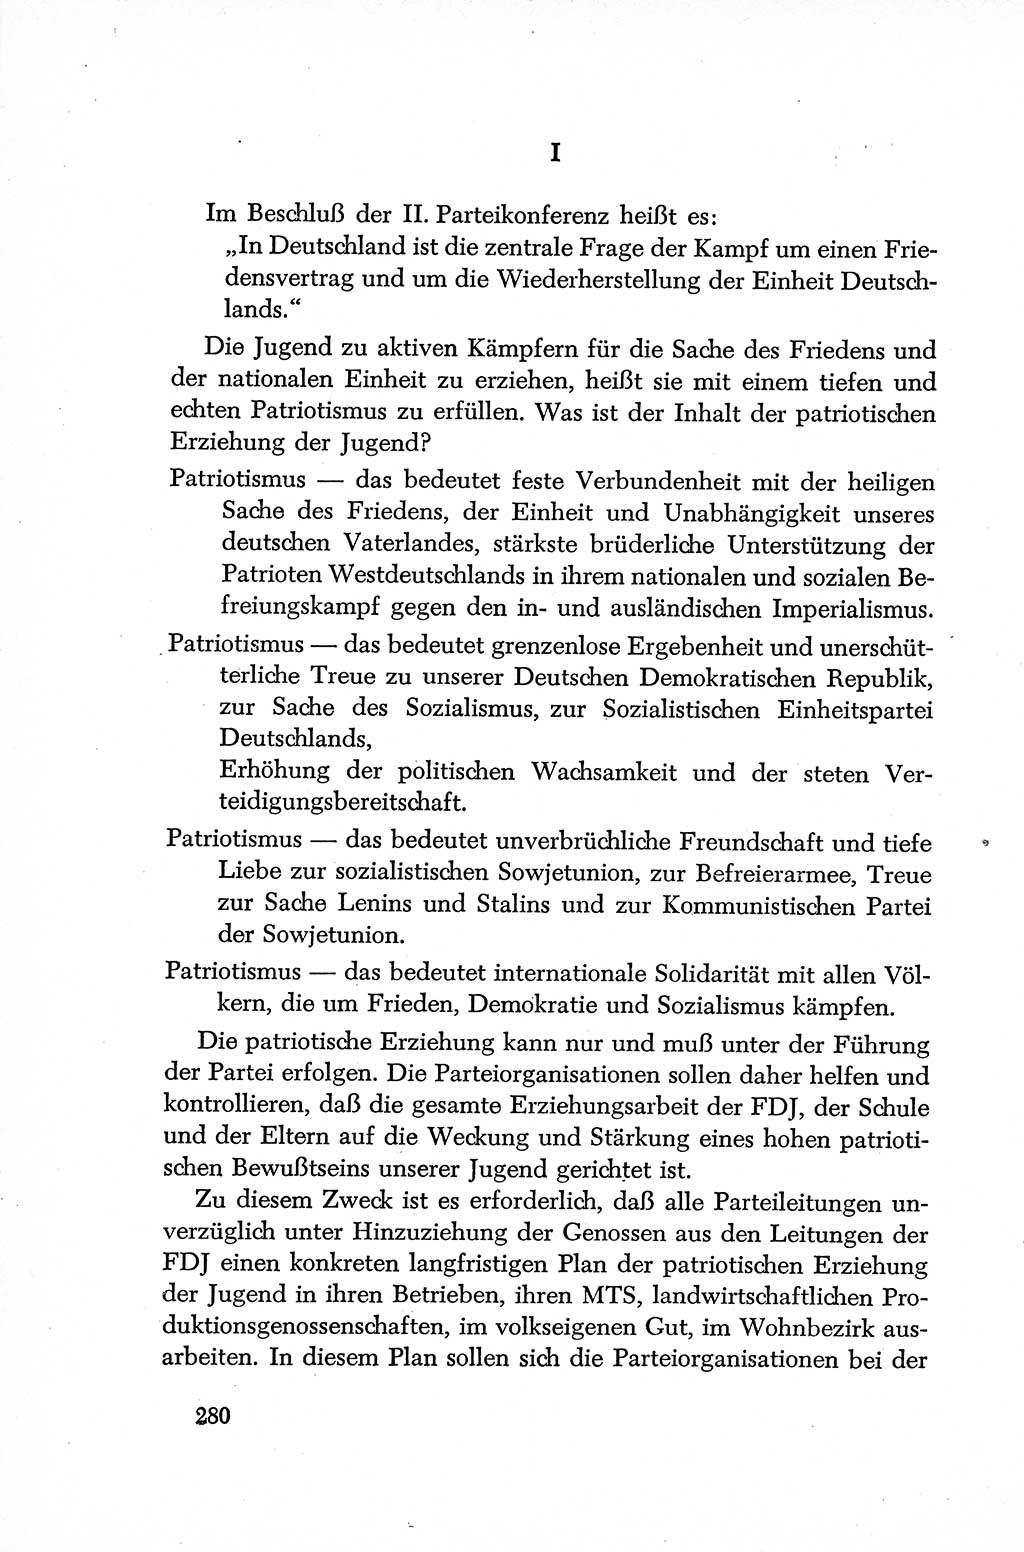 Dokumente der Sozialistischen Einheitspartei Deutschlands (SED) [Deutsche Demokratische Republik (DDR)] 1952-1953, Seite 280 (Dok. SED DDR 1952-1953, S. 280)